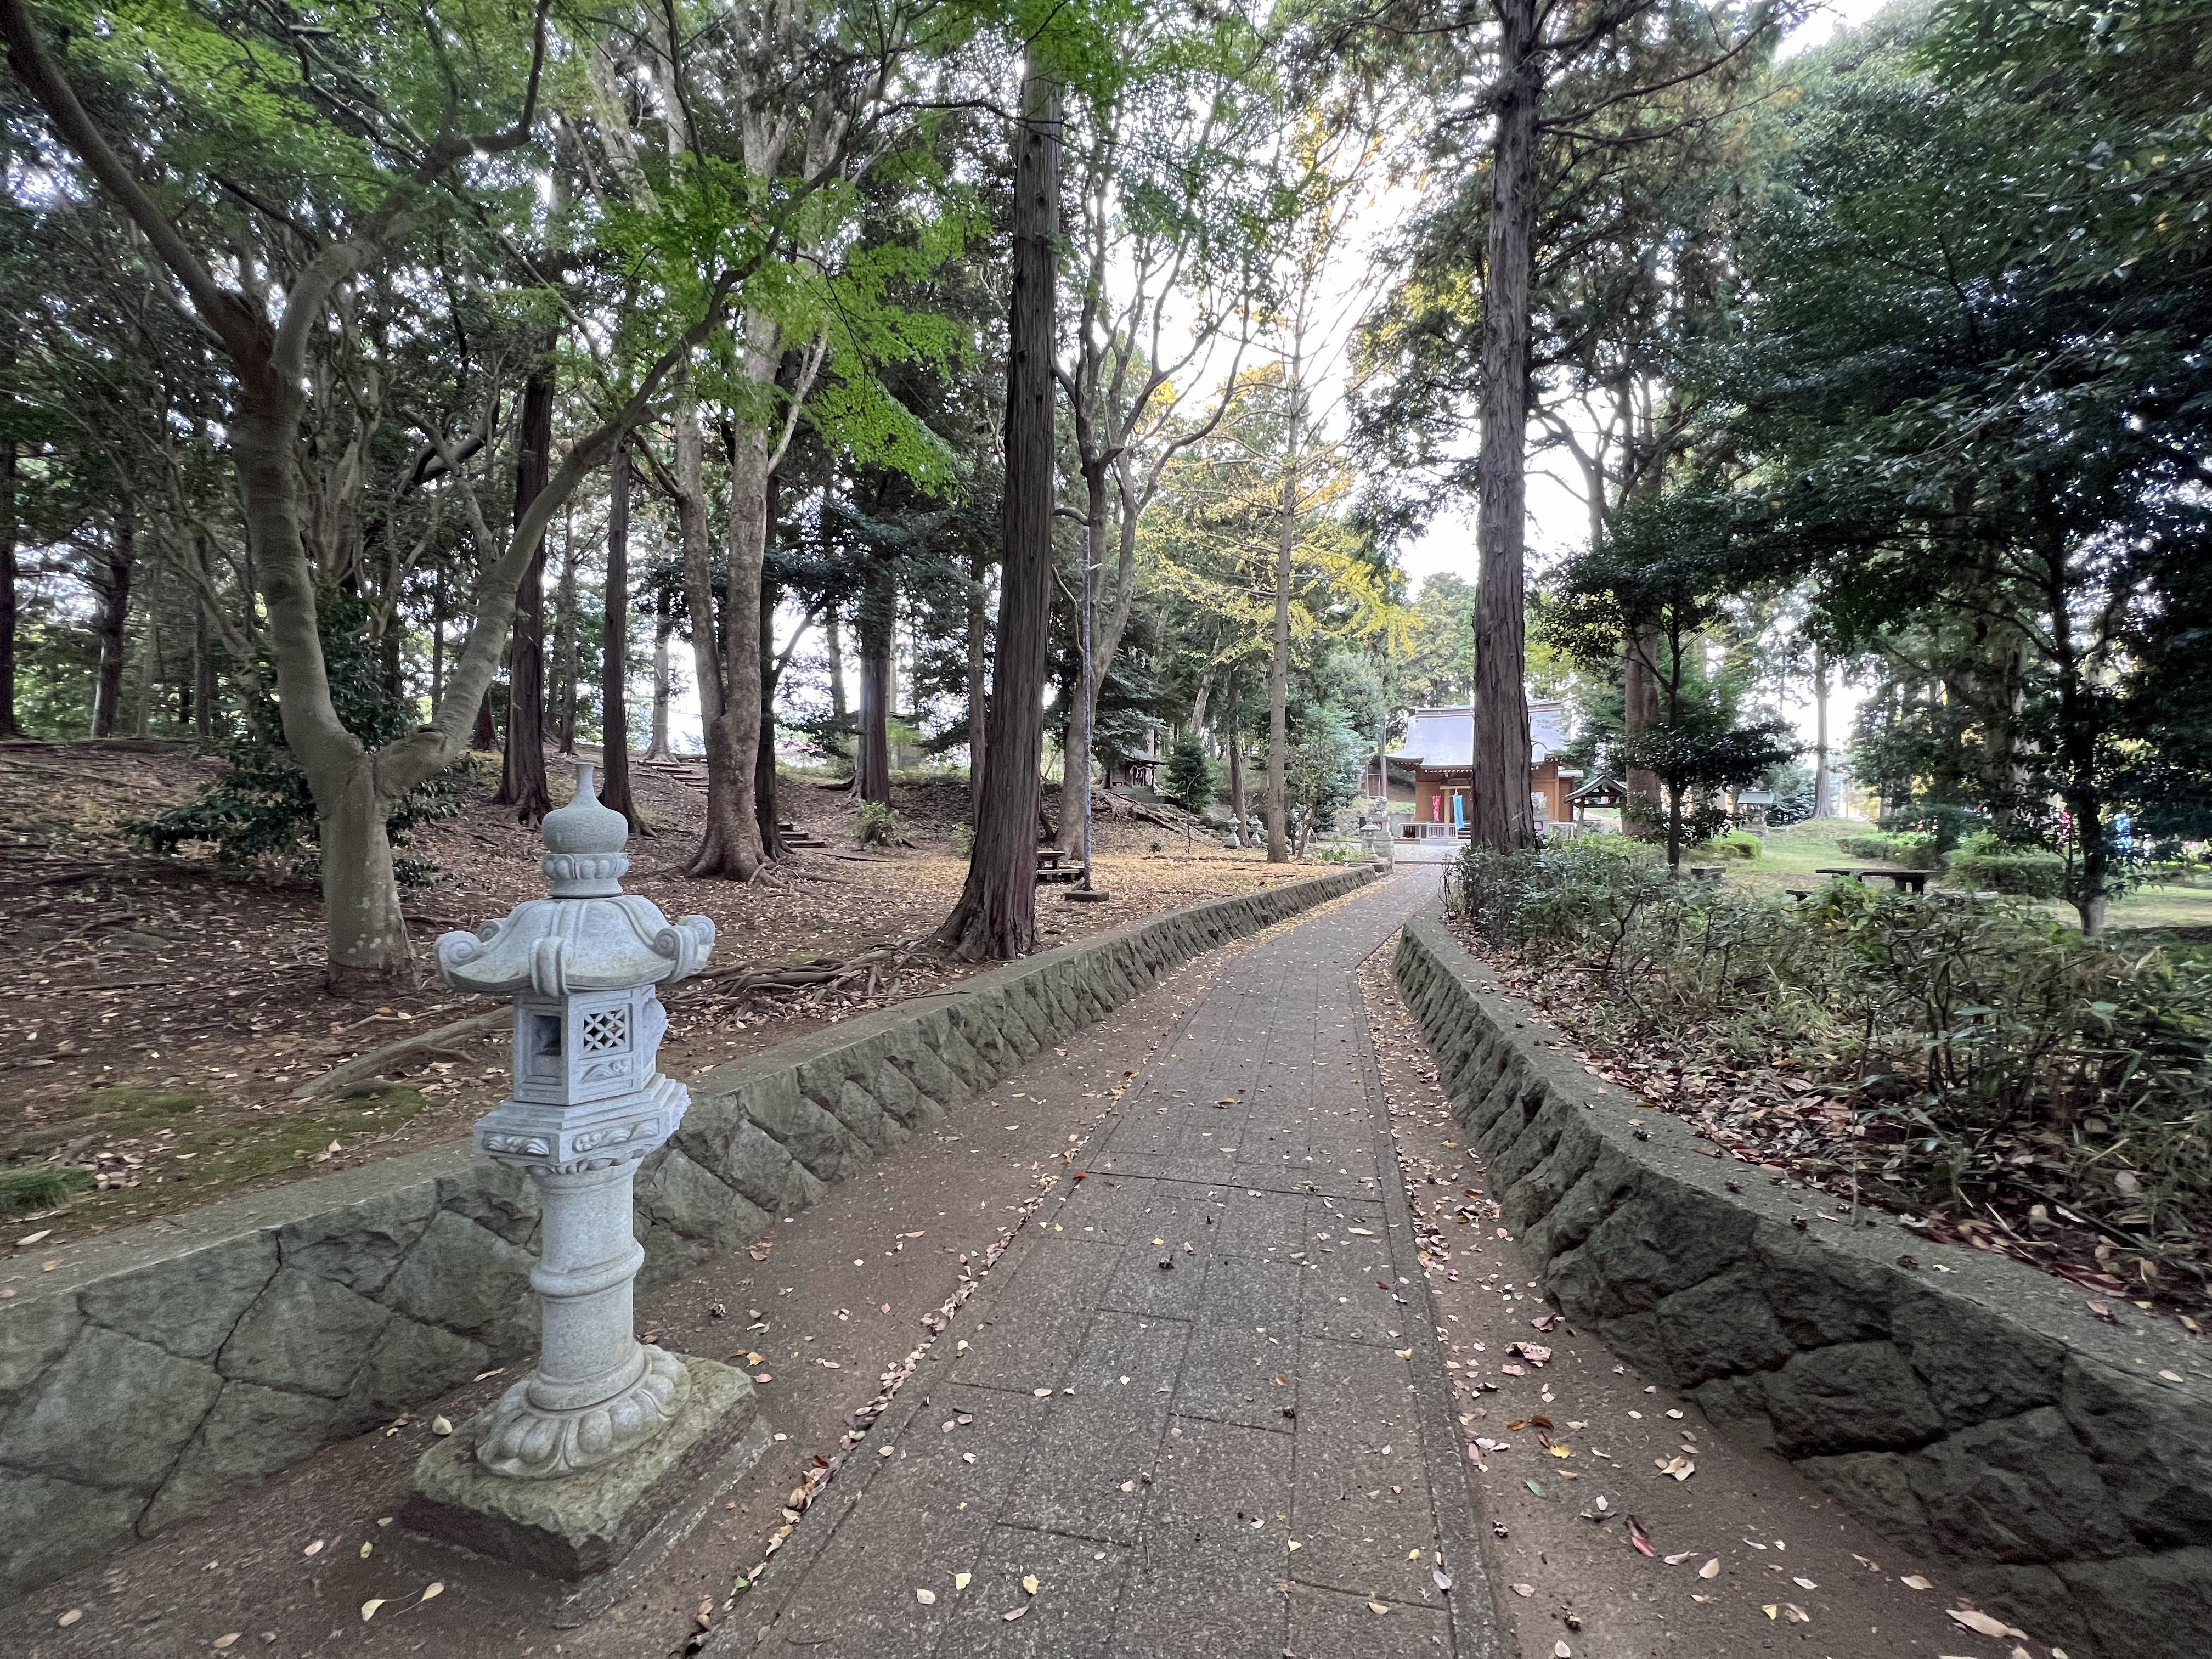 2南曲輪　曲輪の大半と土塁が現存。廃城後に城山神社が建立、手水舎脇に解説盤あり